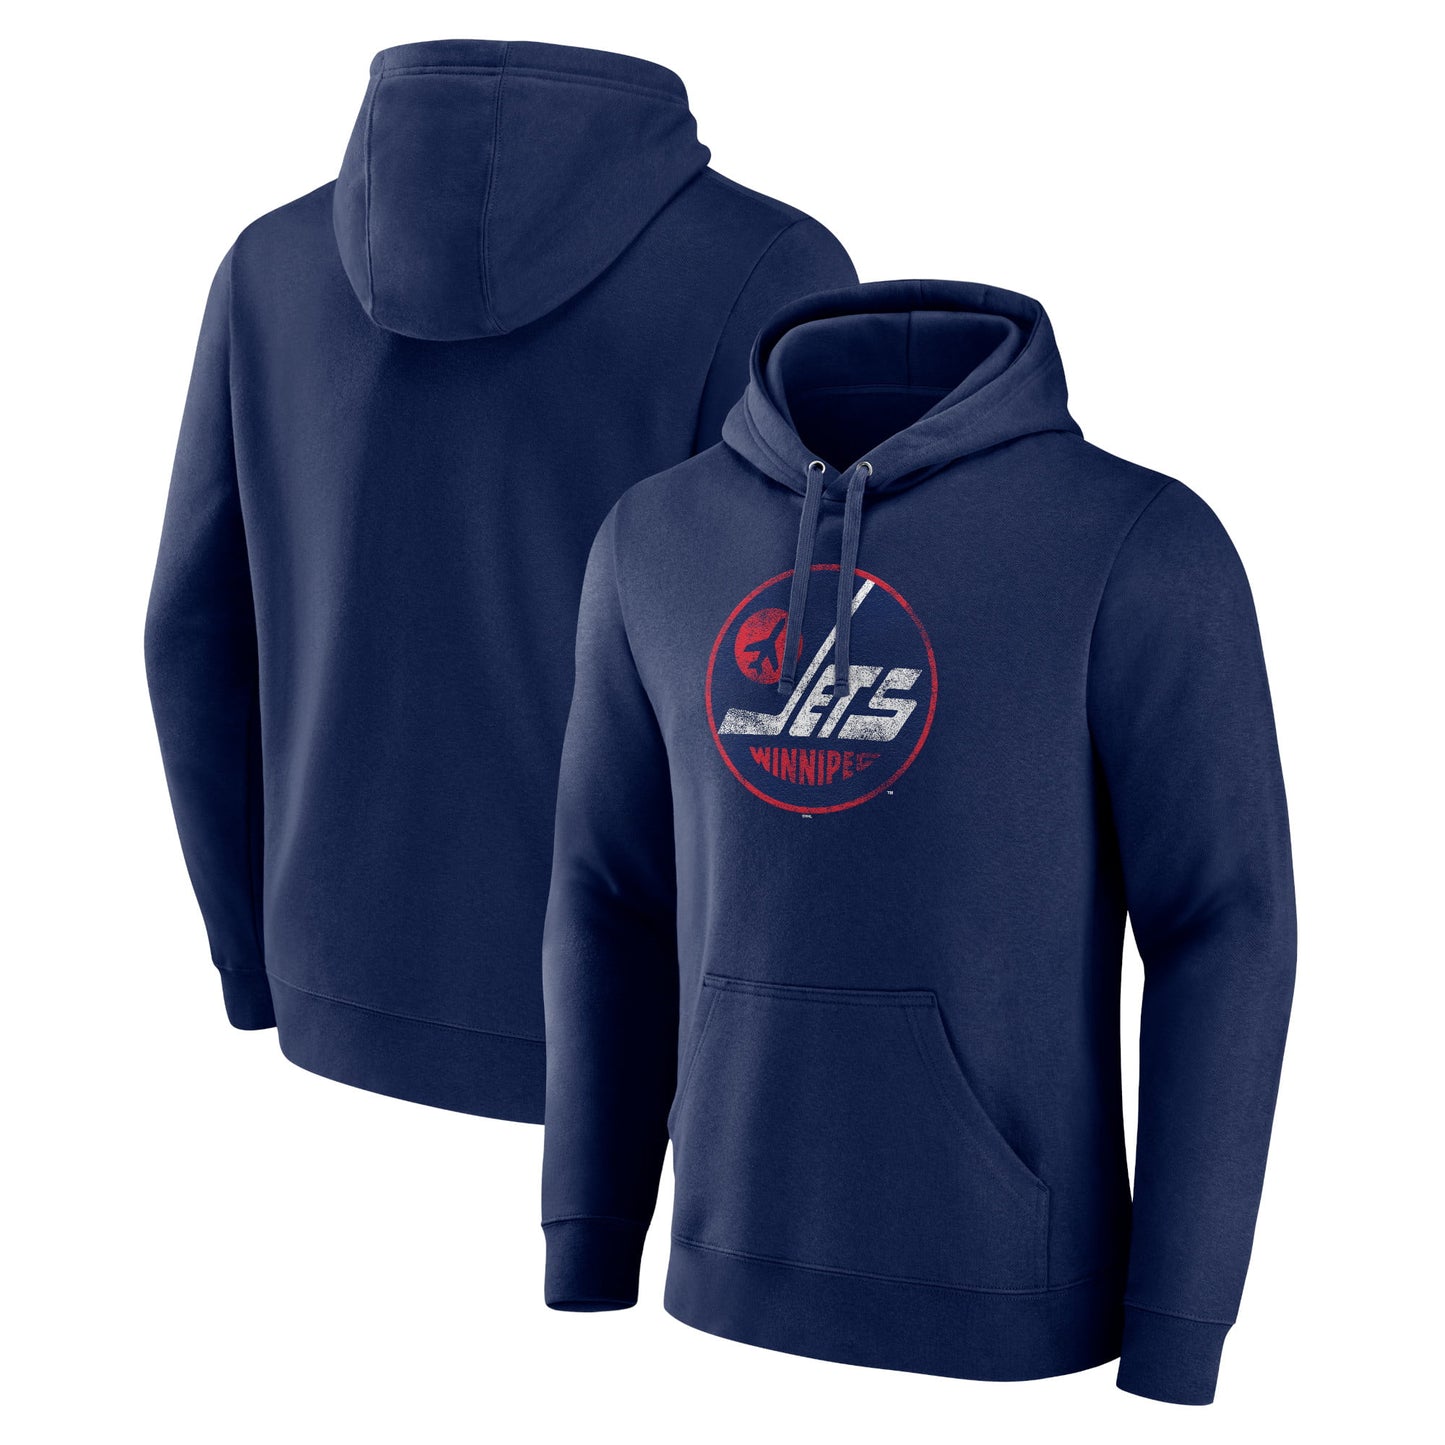 Men's Fanatics Branded Navy Winnipeg Jets Alternate Logo Pullover Hoodie